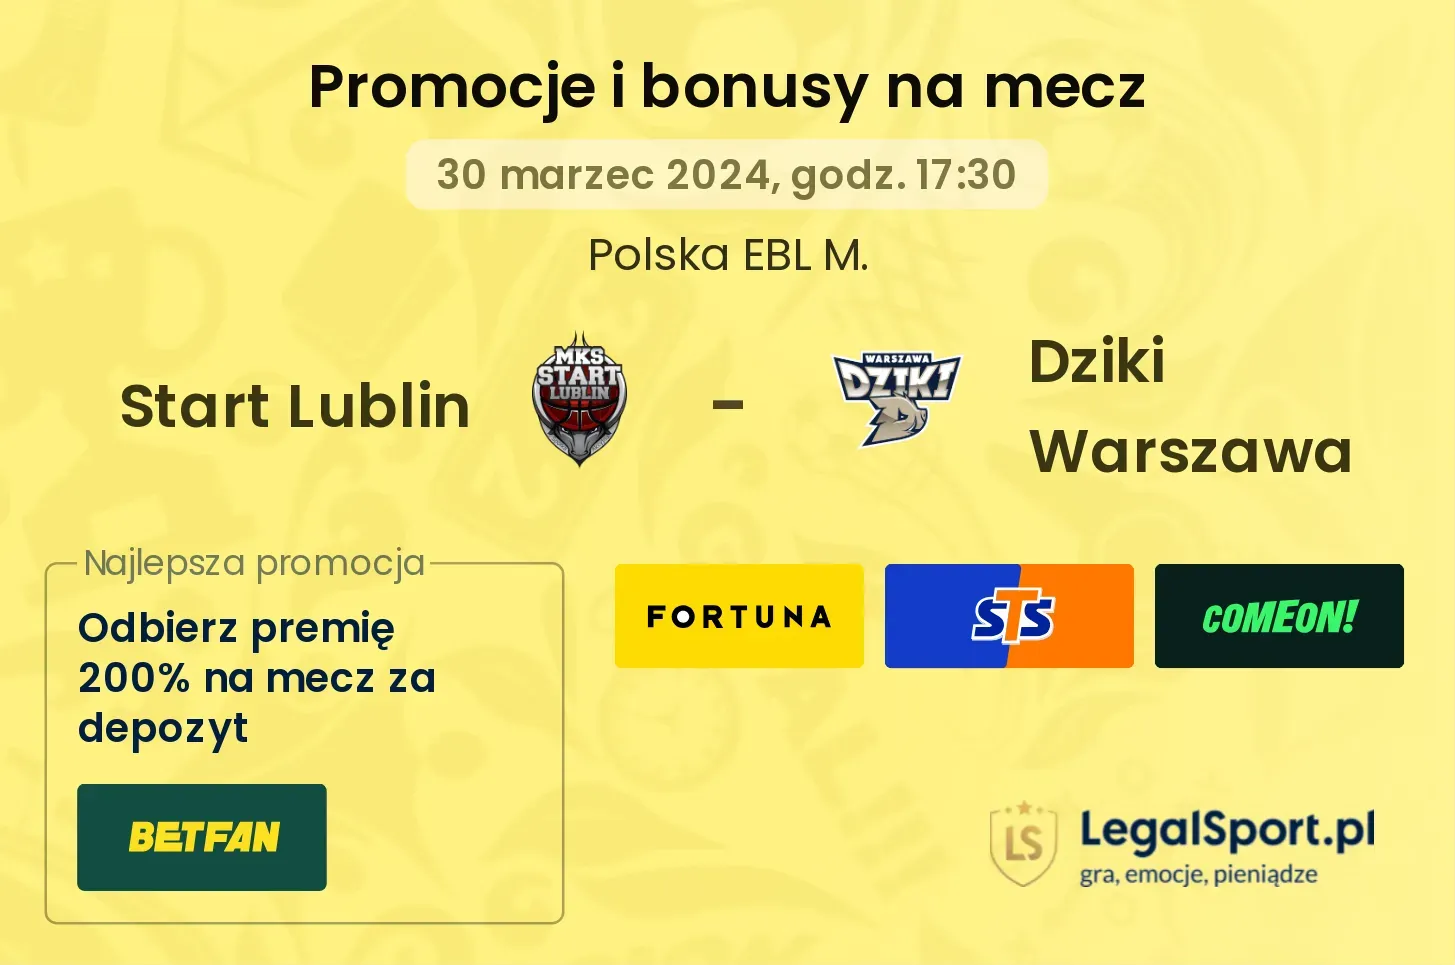 Start Lublin - Dziki Warszawa promocje bonusy na mecz